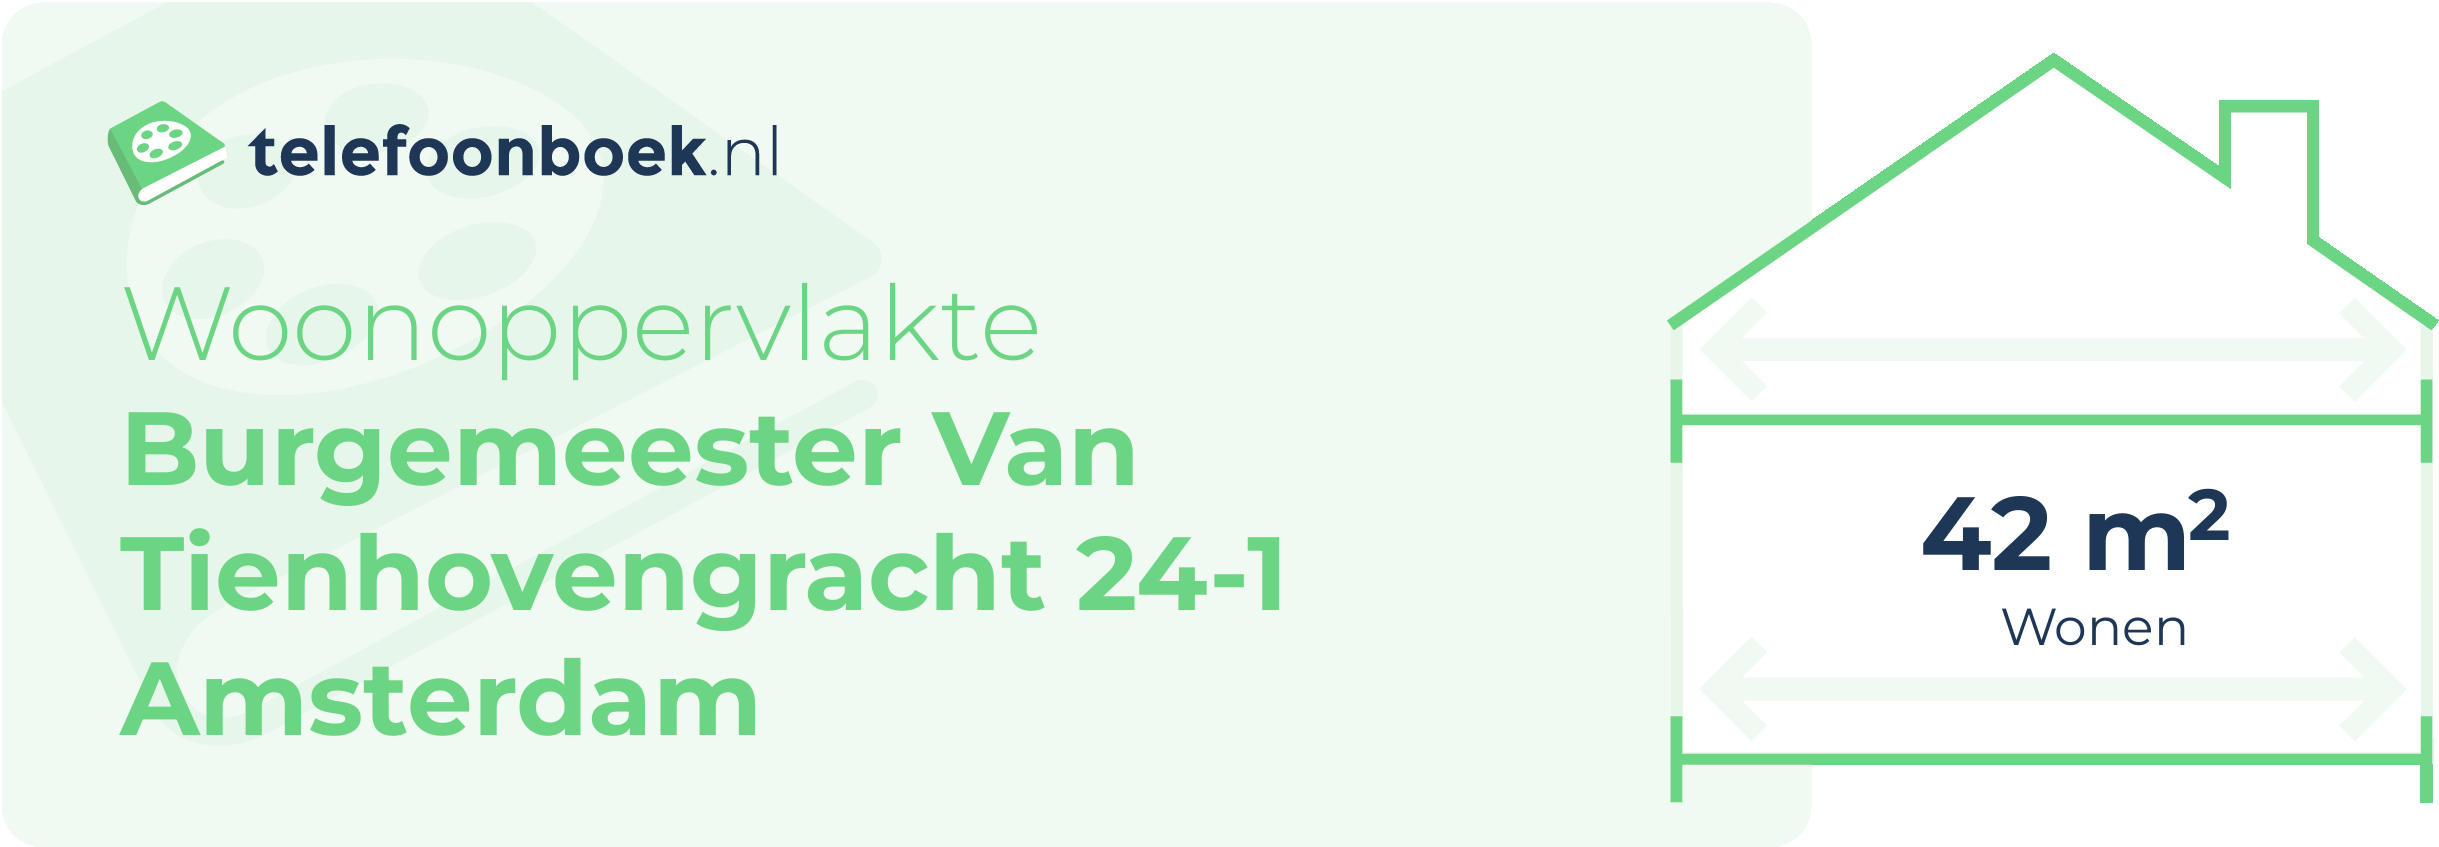 Woonoppervlakte Burgemeester Van Tienhovengracht 24-1 Amsterdam